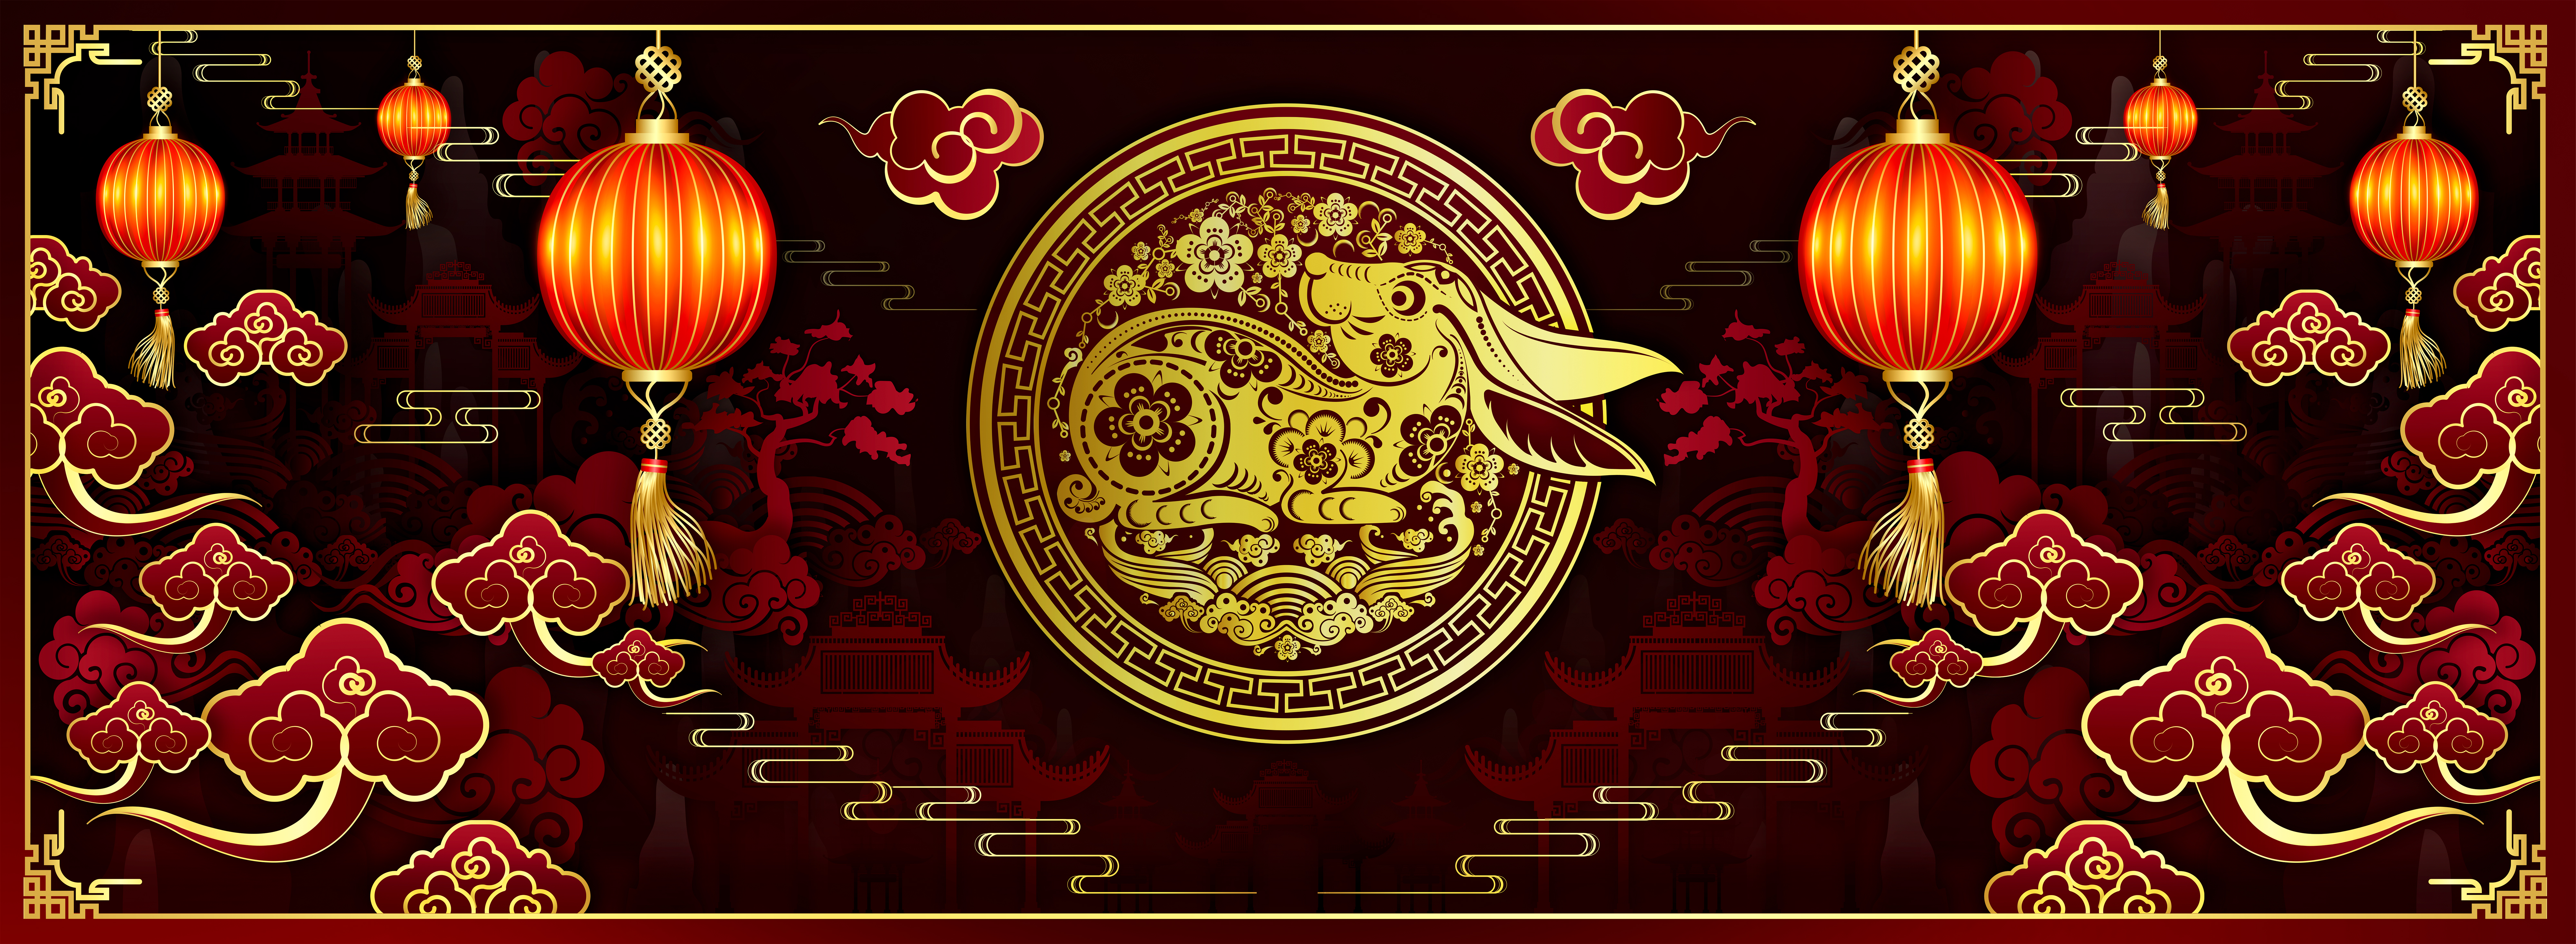 Kínai összeillő szerelmi horoszkóp: ő lehet a lelki társad – hamarosan  rátalálsz - kiskegyed.hu